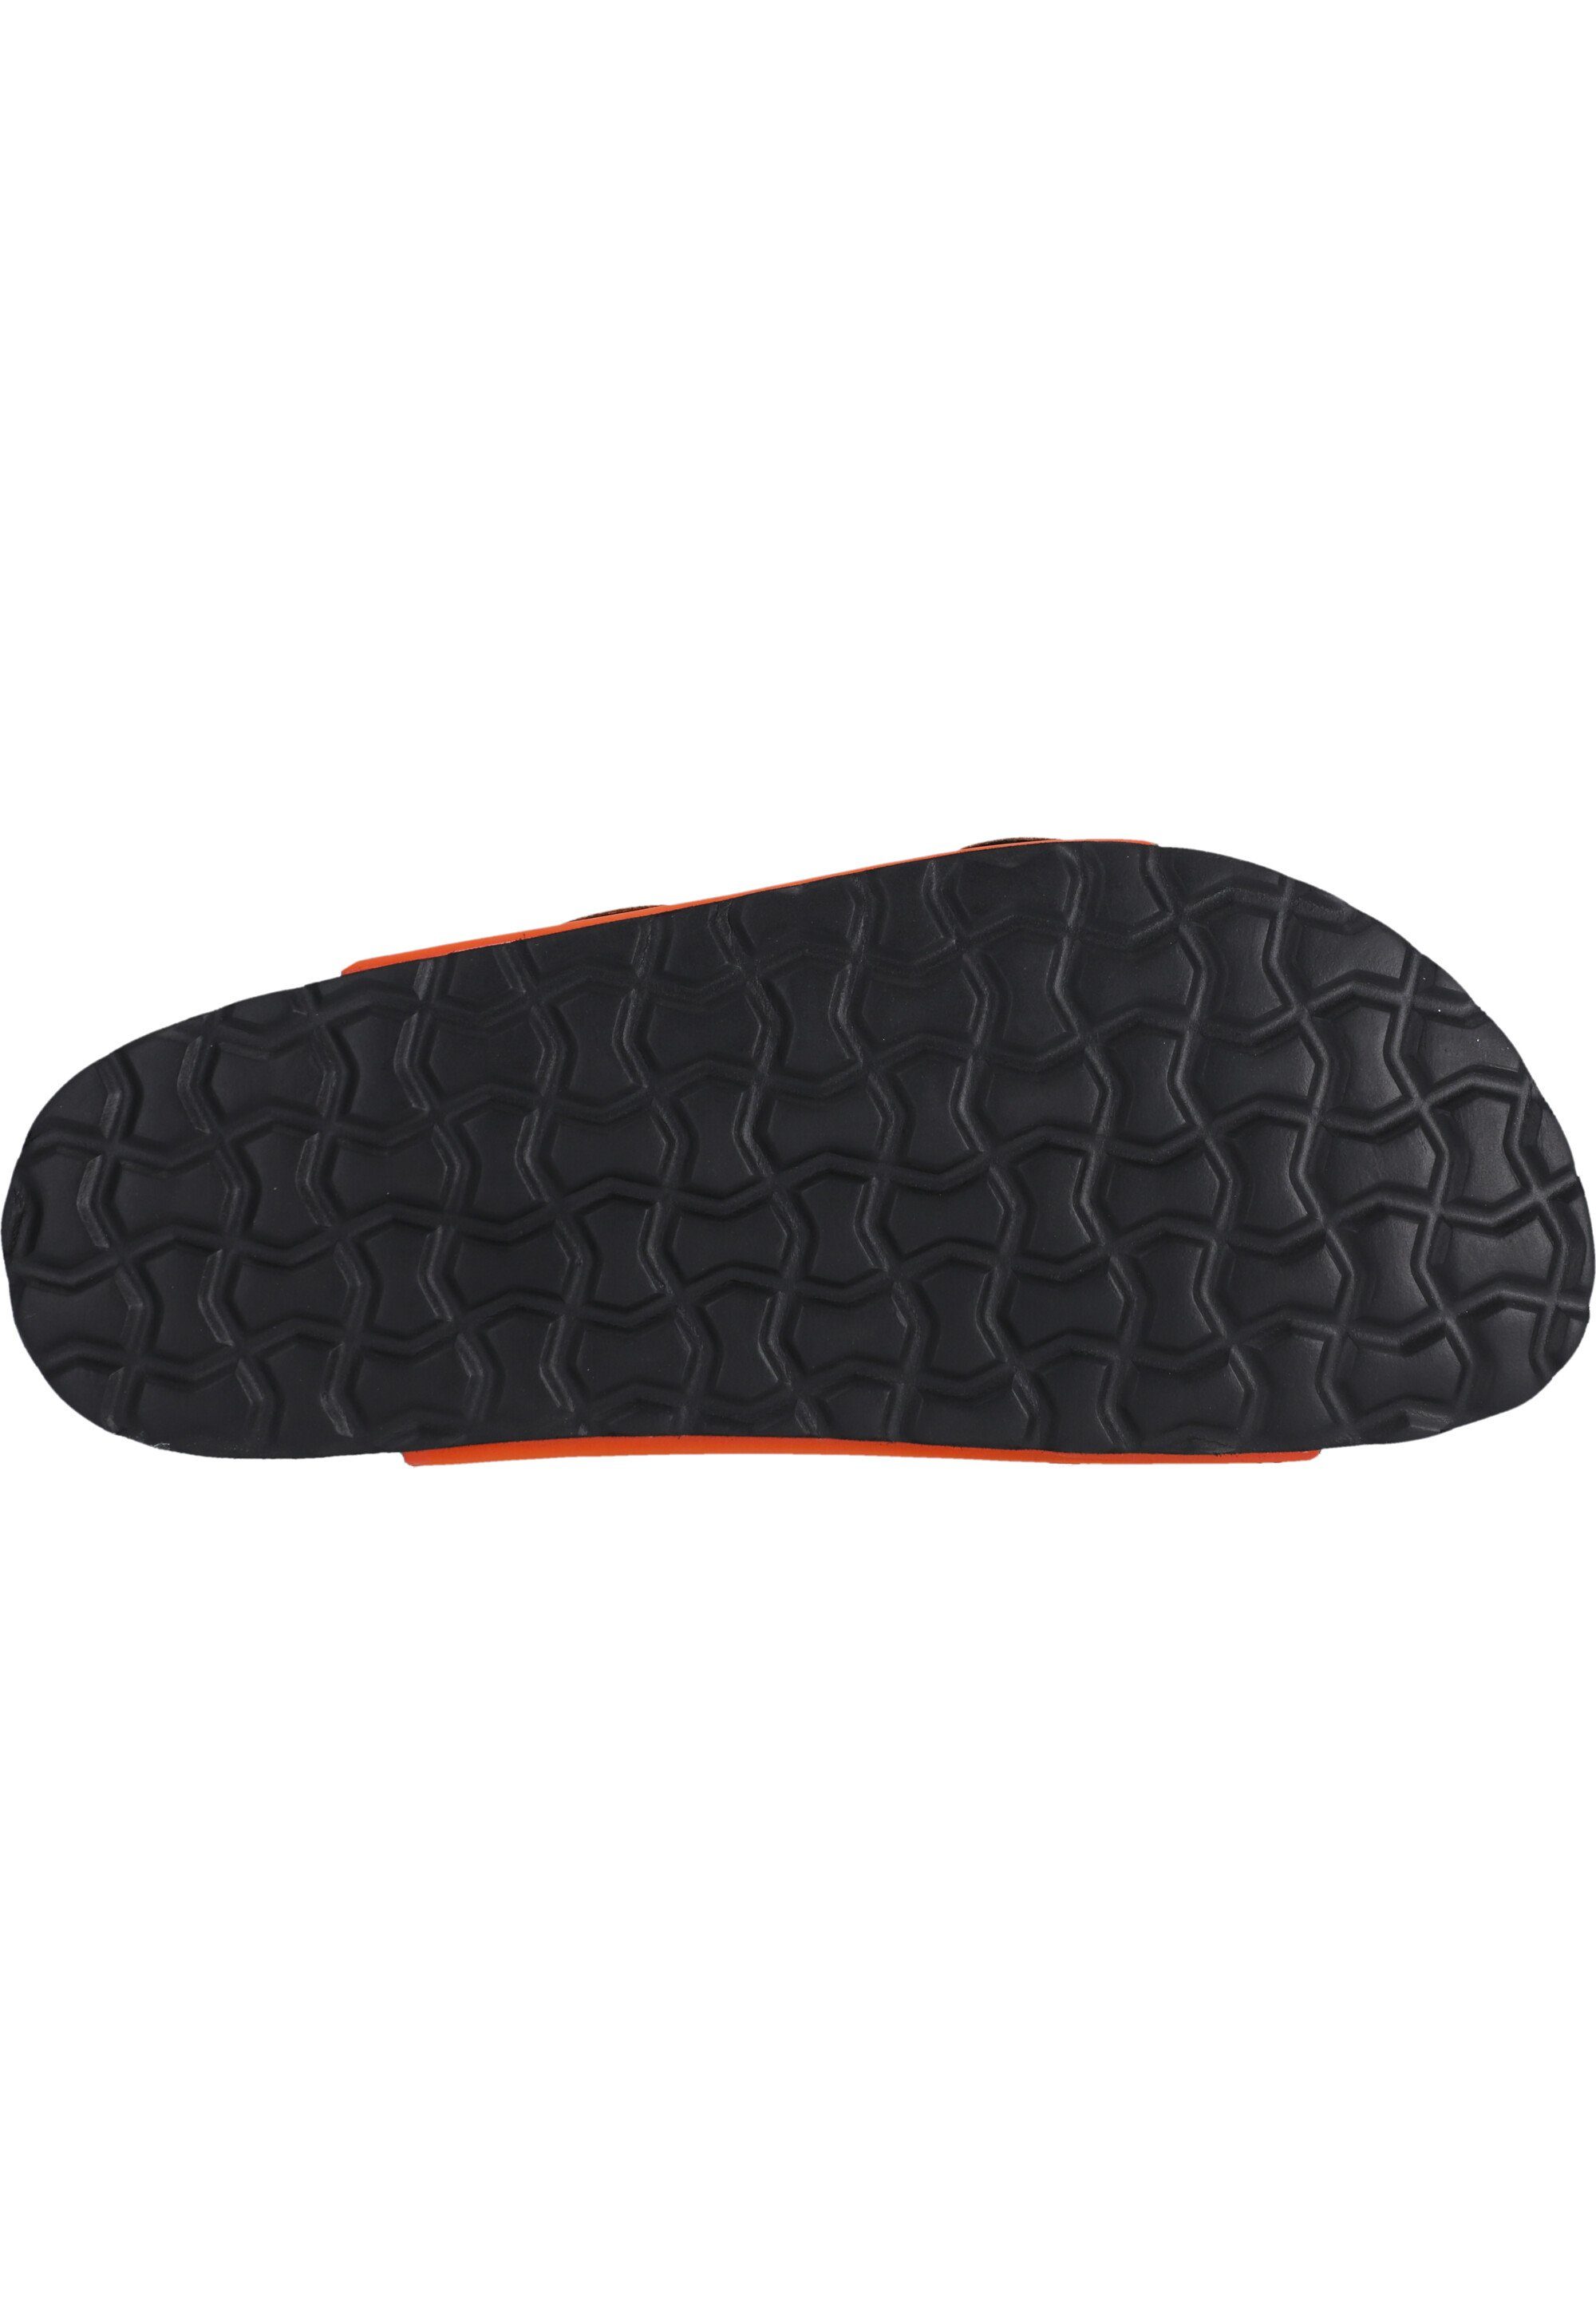 ergonomischem Fußbett Hardingburg Sandale CRUZ mit orange-schwarz